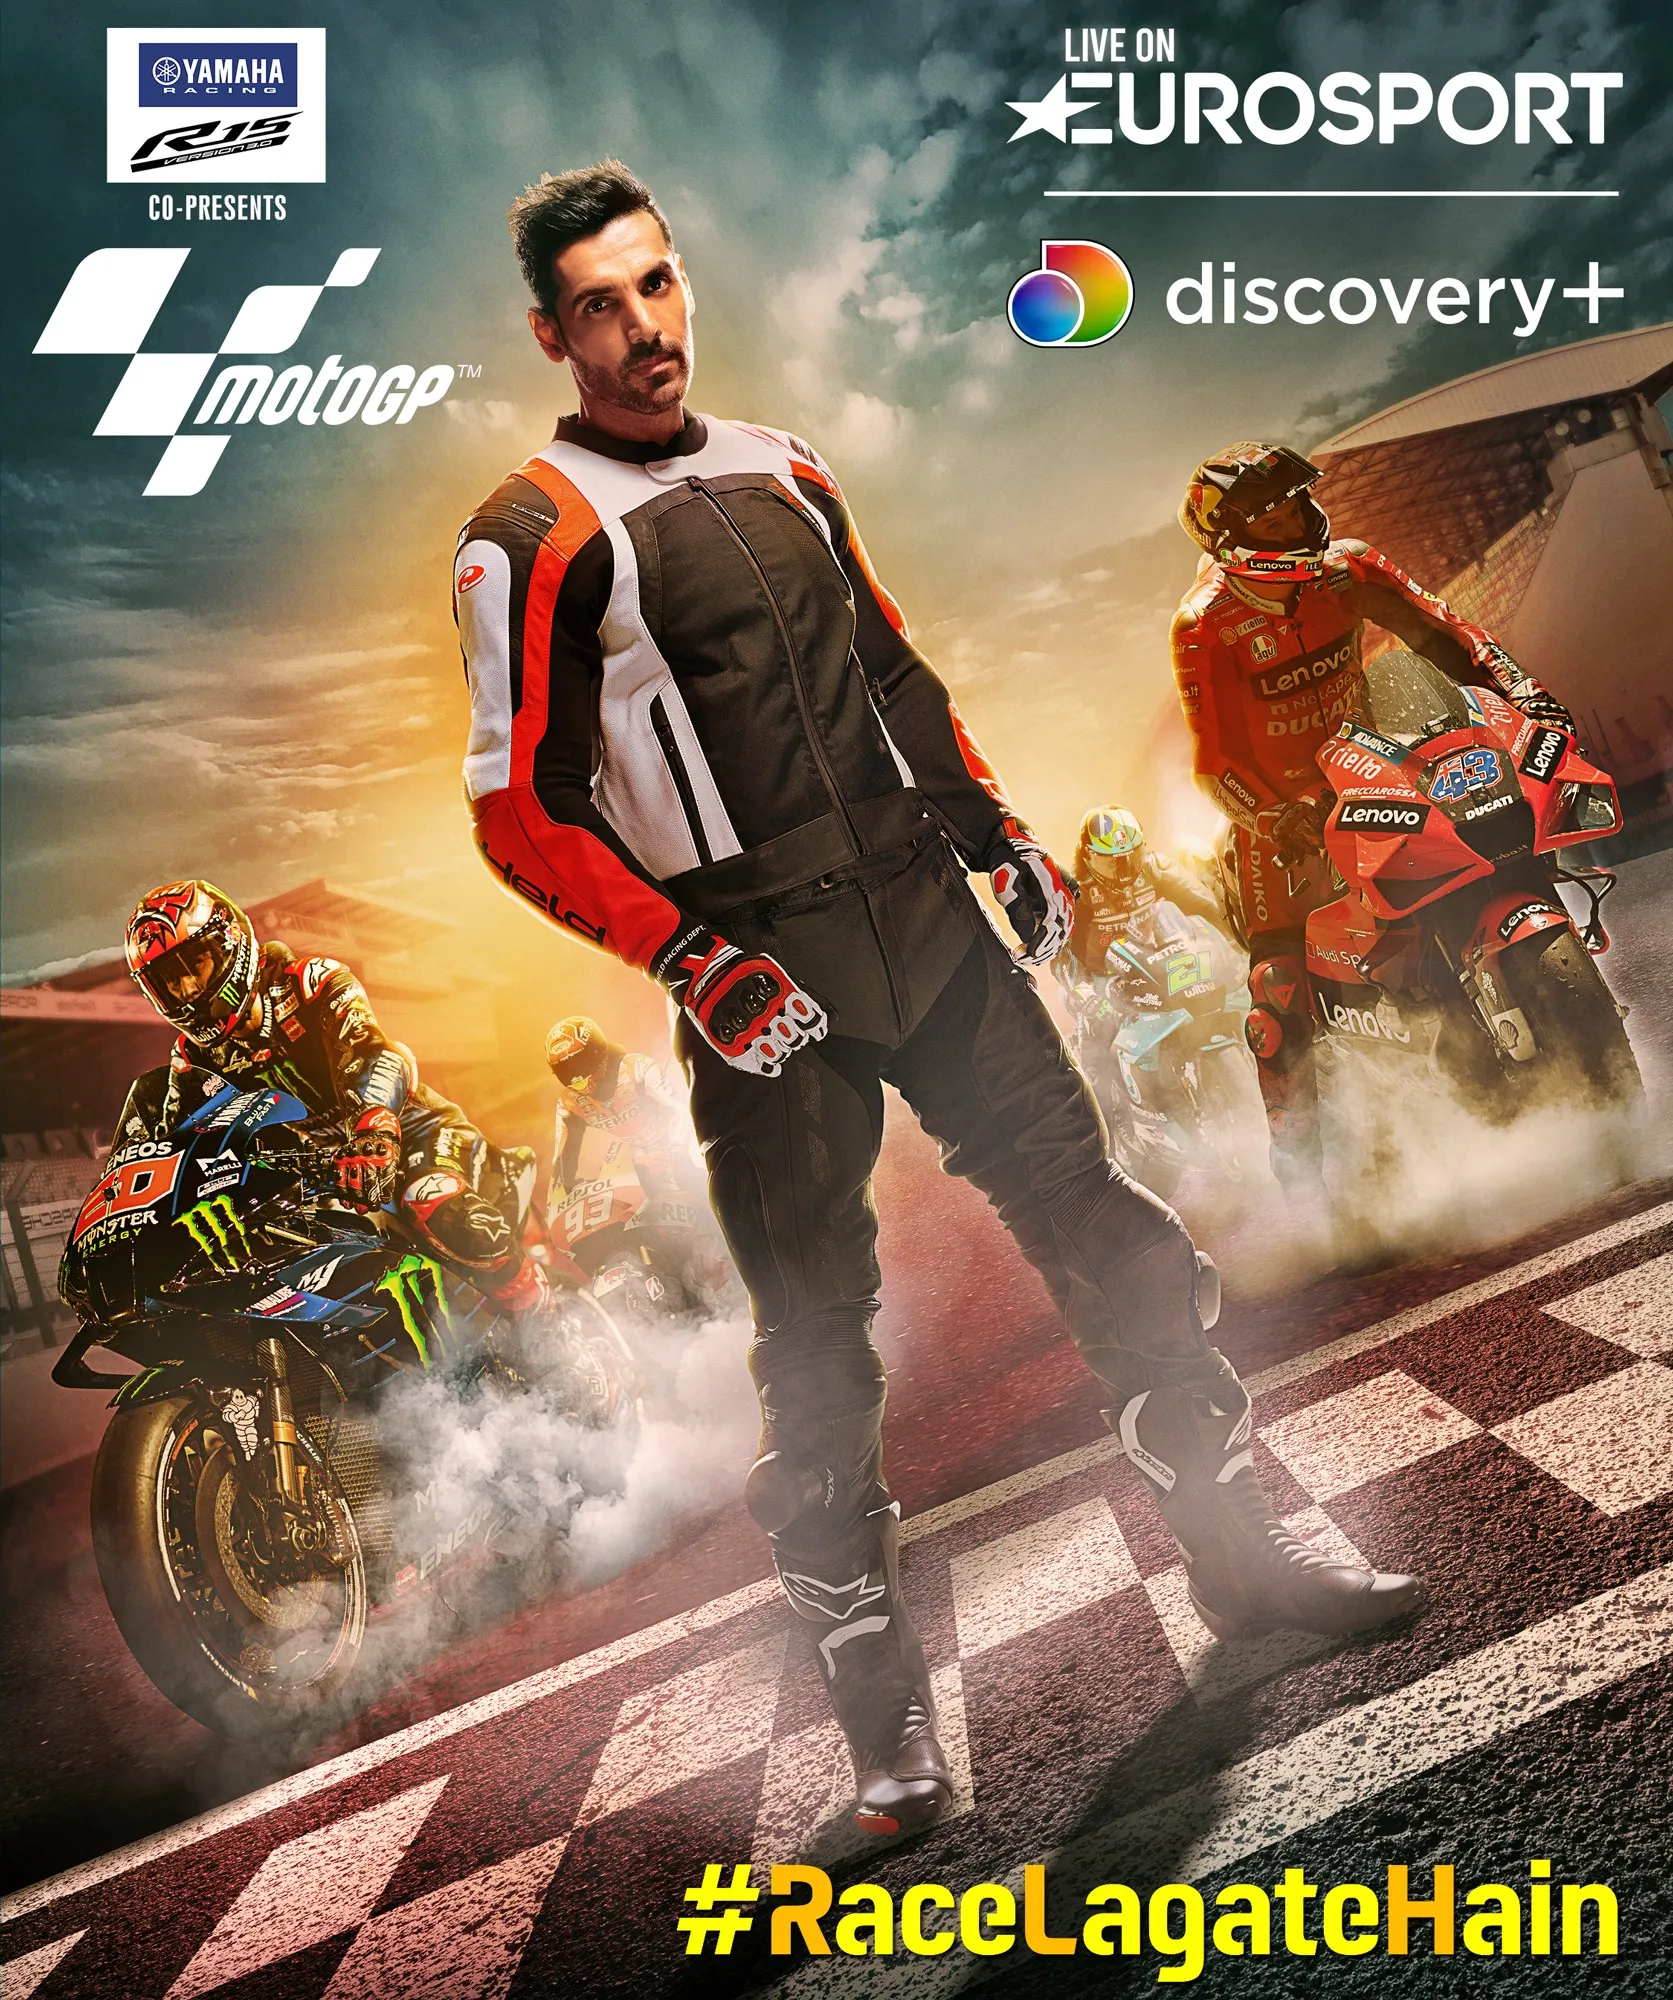 जॉन अब्राहम के साथ "रेस लगाते है" का उद्देश्य दुनिया की सबसे बड़ी रेस के साथ भारतीयों में रेसिंग के जुनून को एक साथ लाना है - MotoGP